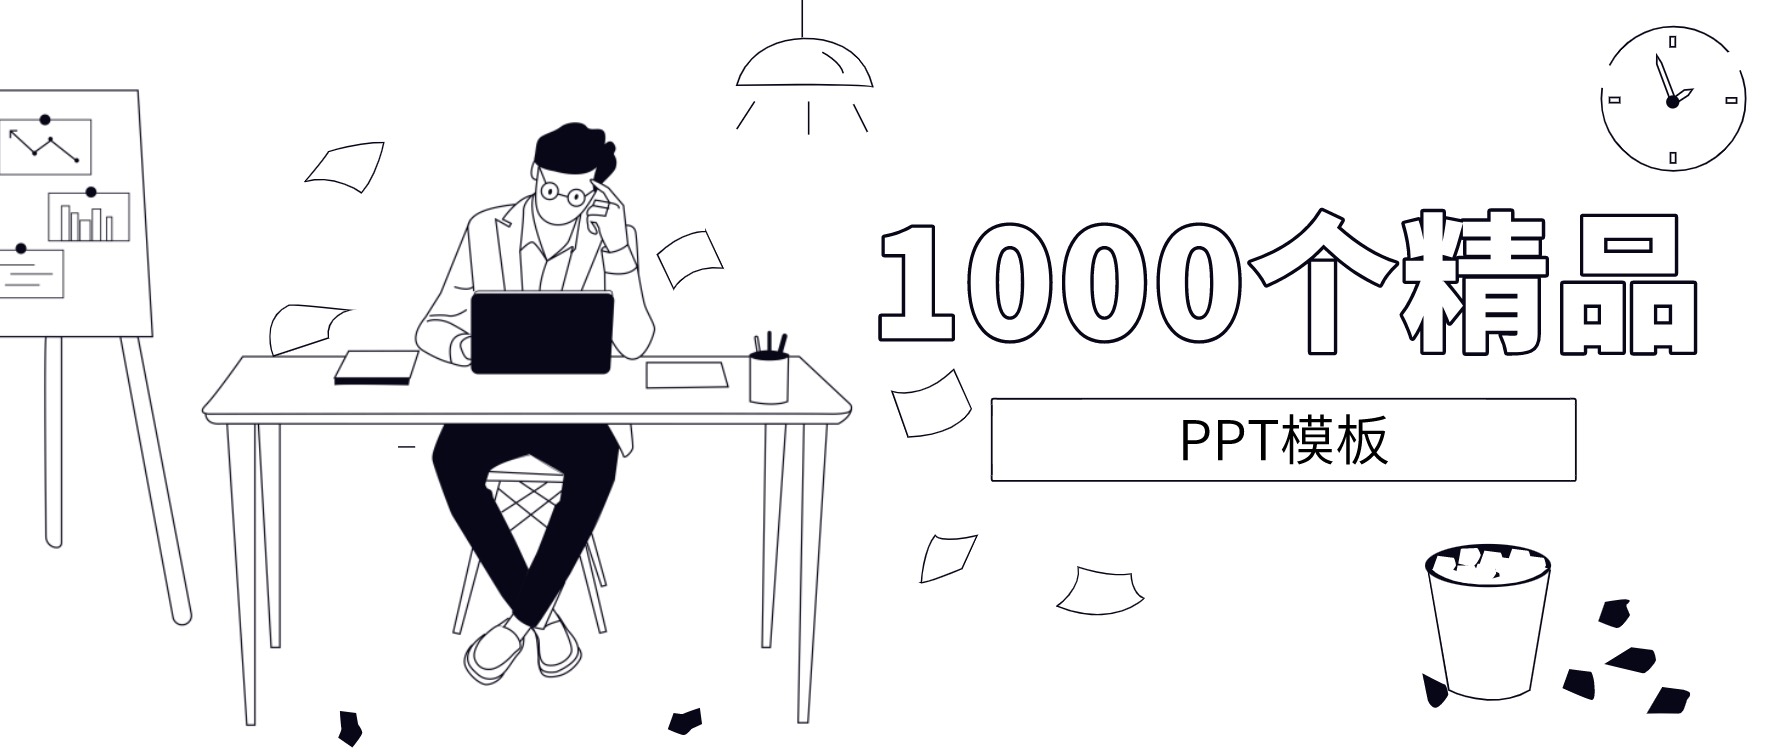 1000套精品PPT模板分享 百度网盘插图